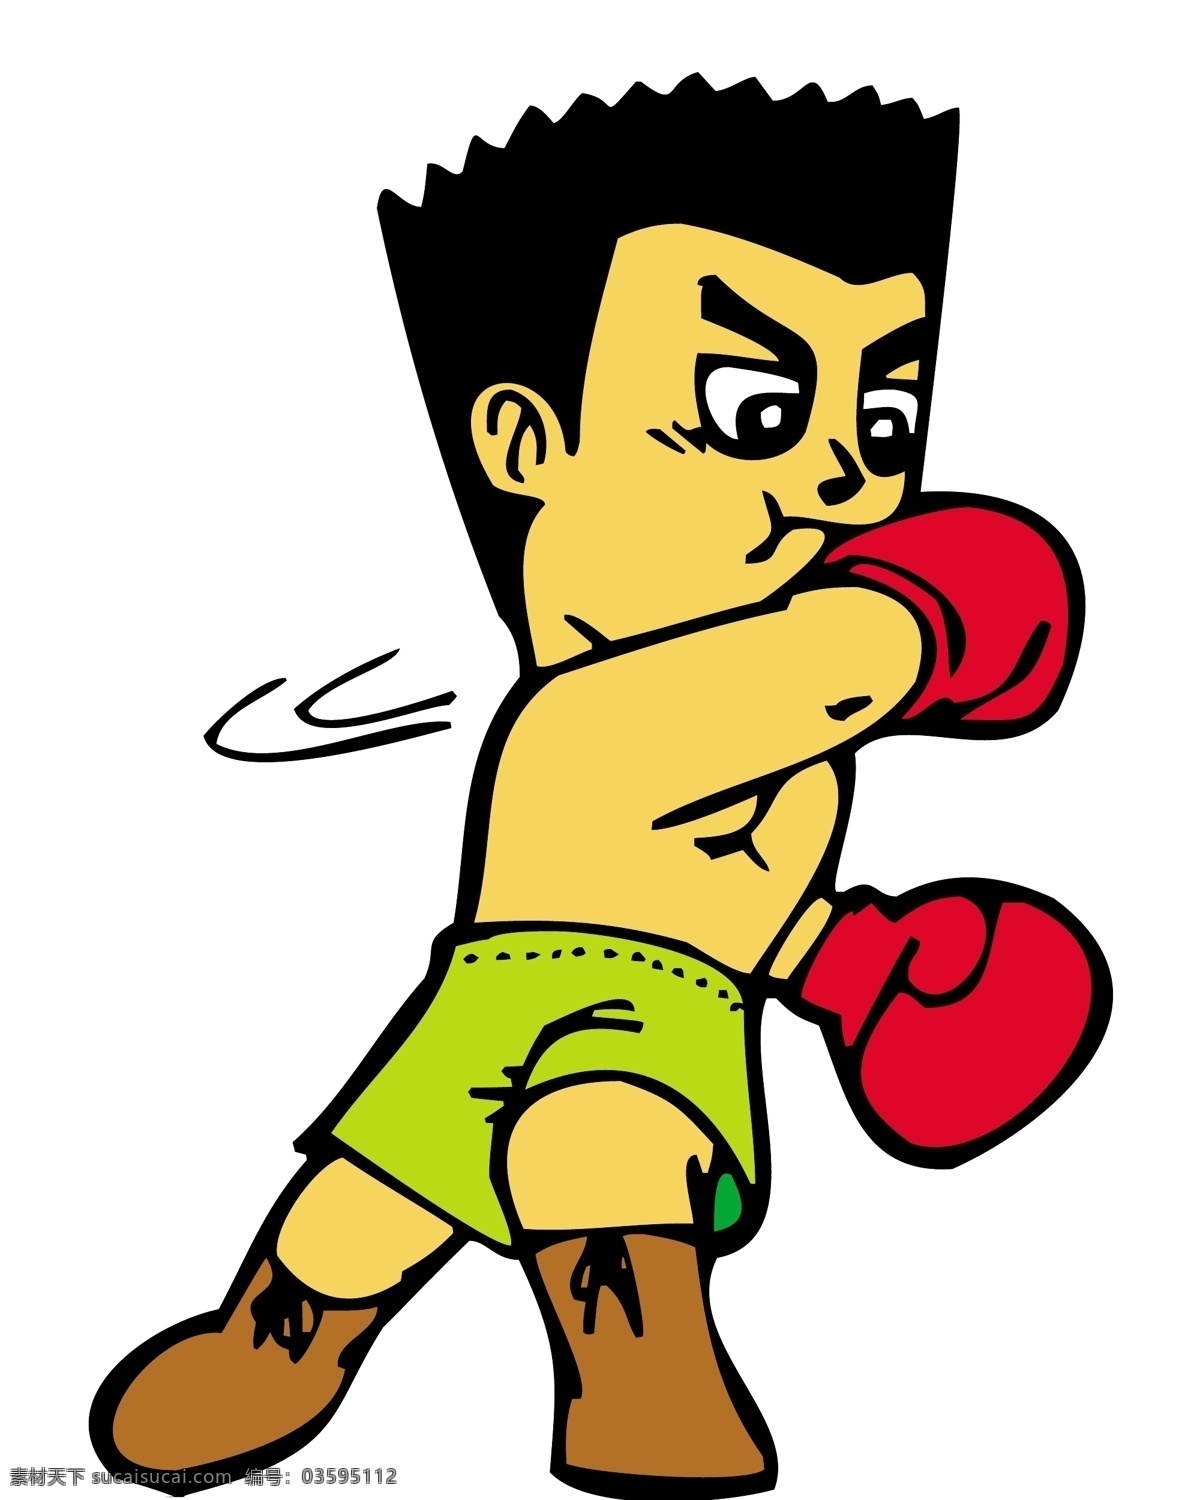 矢量 拳击 可爱 卡通 运动员 模板下载 卡通运动员 人物 大全 日常生活 矢量人物